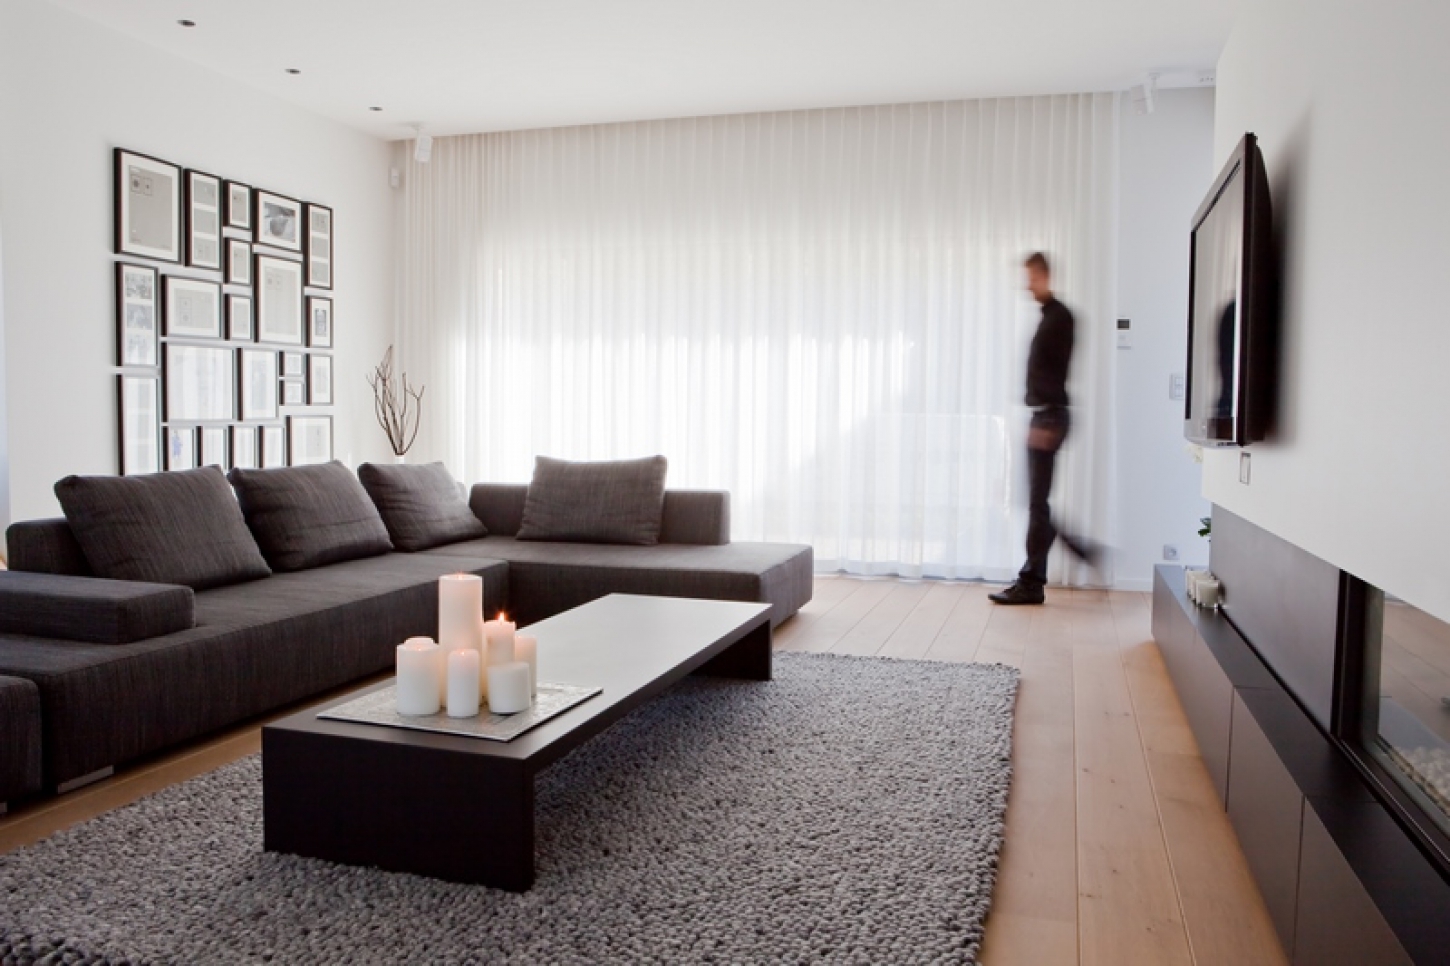 Een ideaal wooncomfort wordt gecreëerd door de perfecte balans tussen isolatie en ventilatie in een woning.